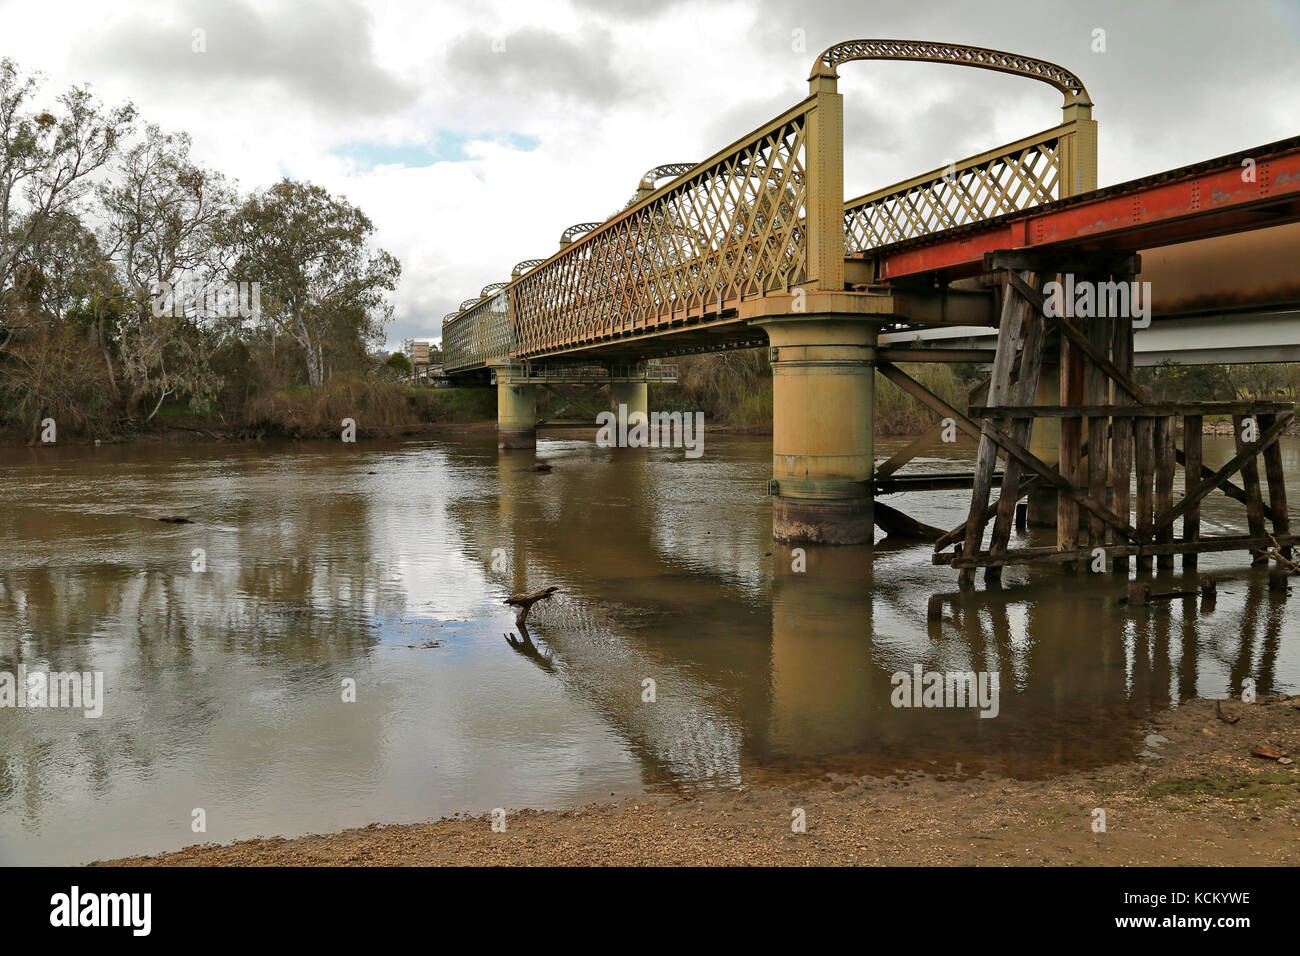 Pont ferroviaire d'Albury-Wodonga au-dessus de la rivière Murray, construit en 1883-1884 pour le Great Southern Railway entre Sydney et Melbourne. Wodonga, Victoria Banque D'Images